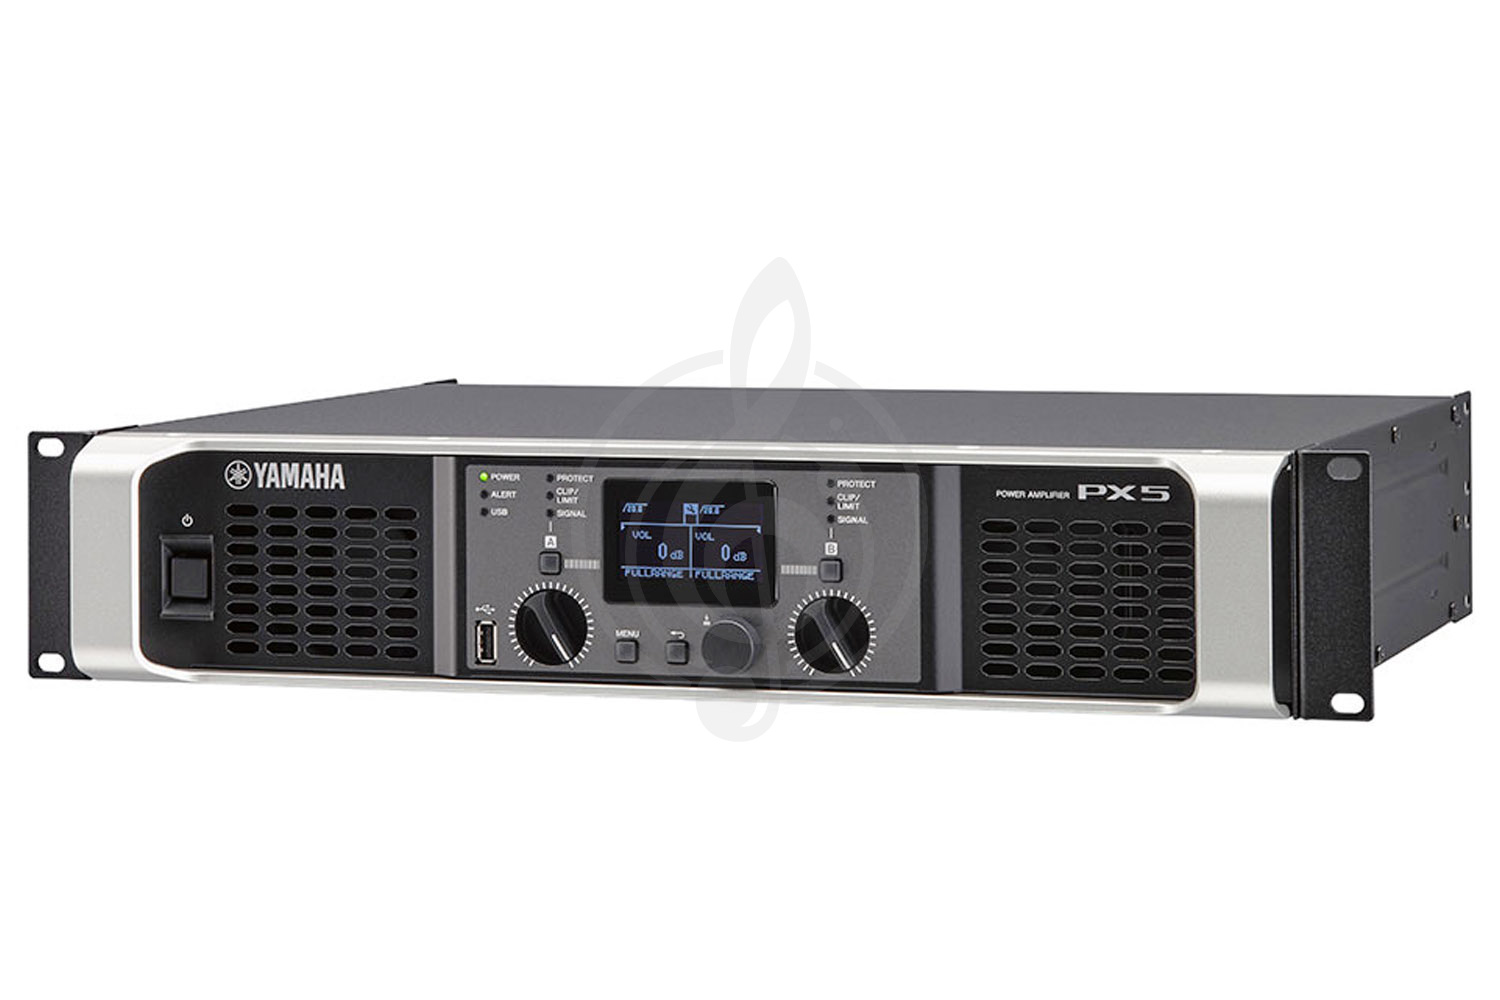 Аналоговый усилитель мощности Аналоговые усилители мощности Yamaha Yamaha PX5 усилитель мощности Class D 2х500 Вт/ 8 Ом, 2x800Вт/ 4 Ом, DSP PX5 - фото 1